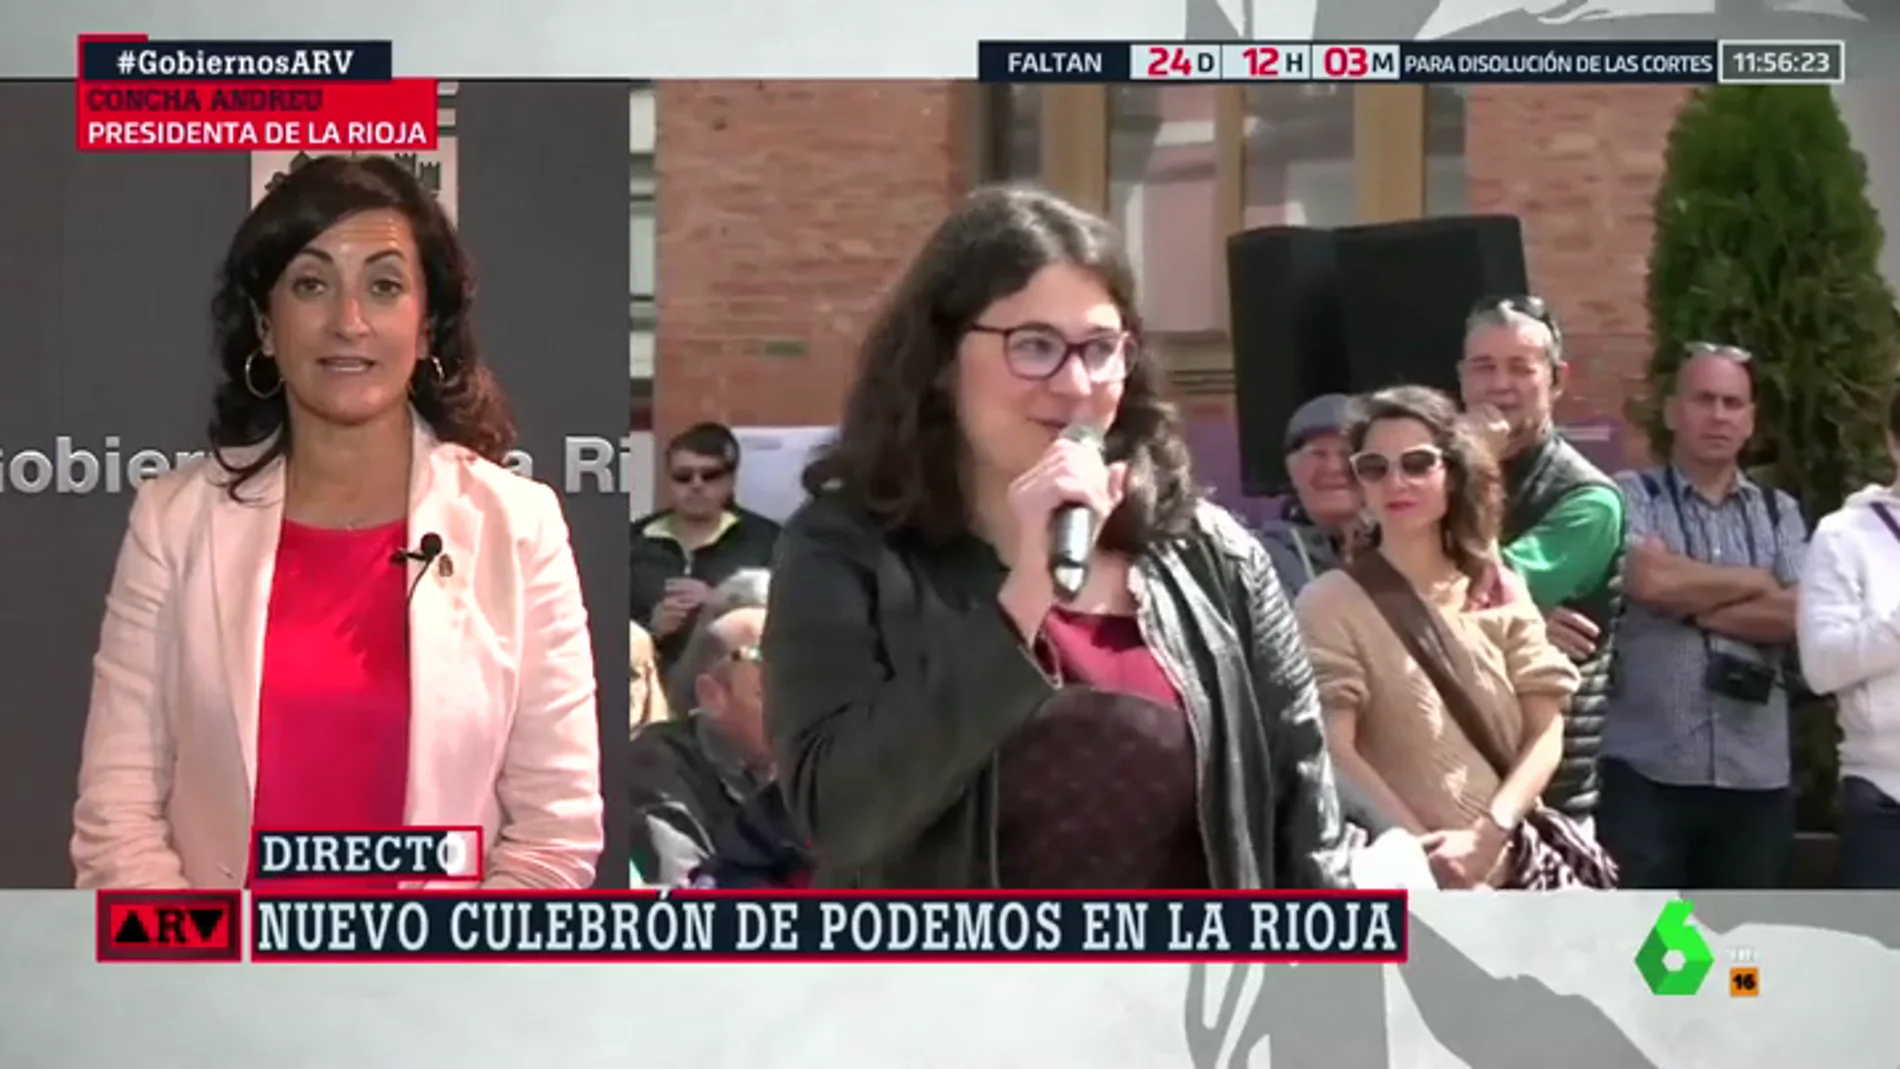 Concha Andreu justifica el nombramiento de Raquel Romero como consejera en La Rioja: "Es la diputada que tiene el escaño"